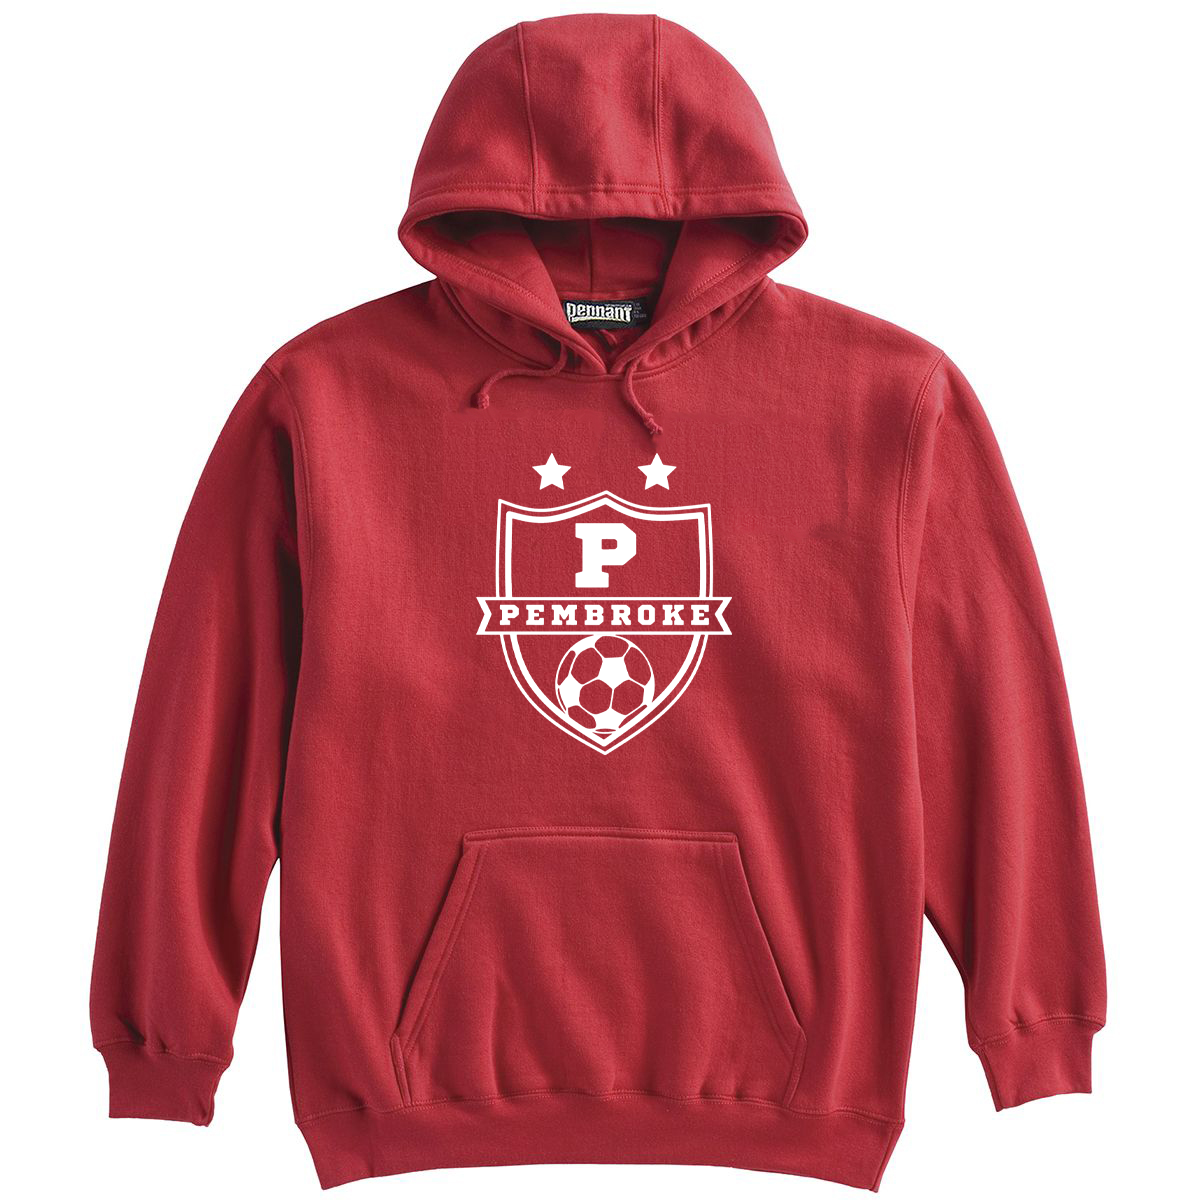 Pembroke Soccer Sweatshirt